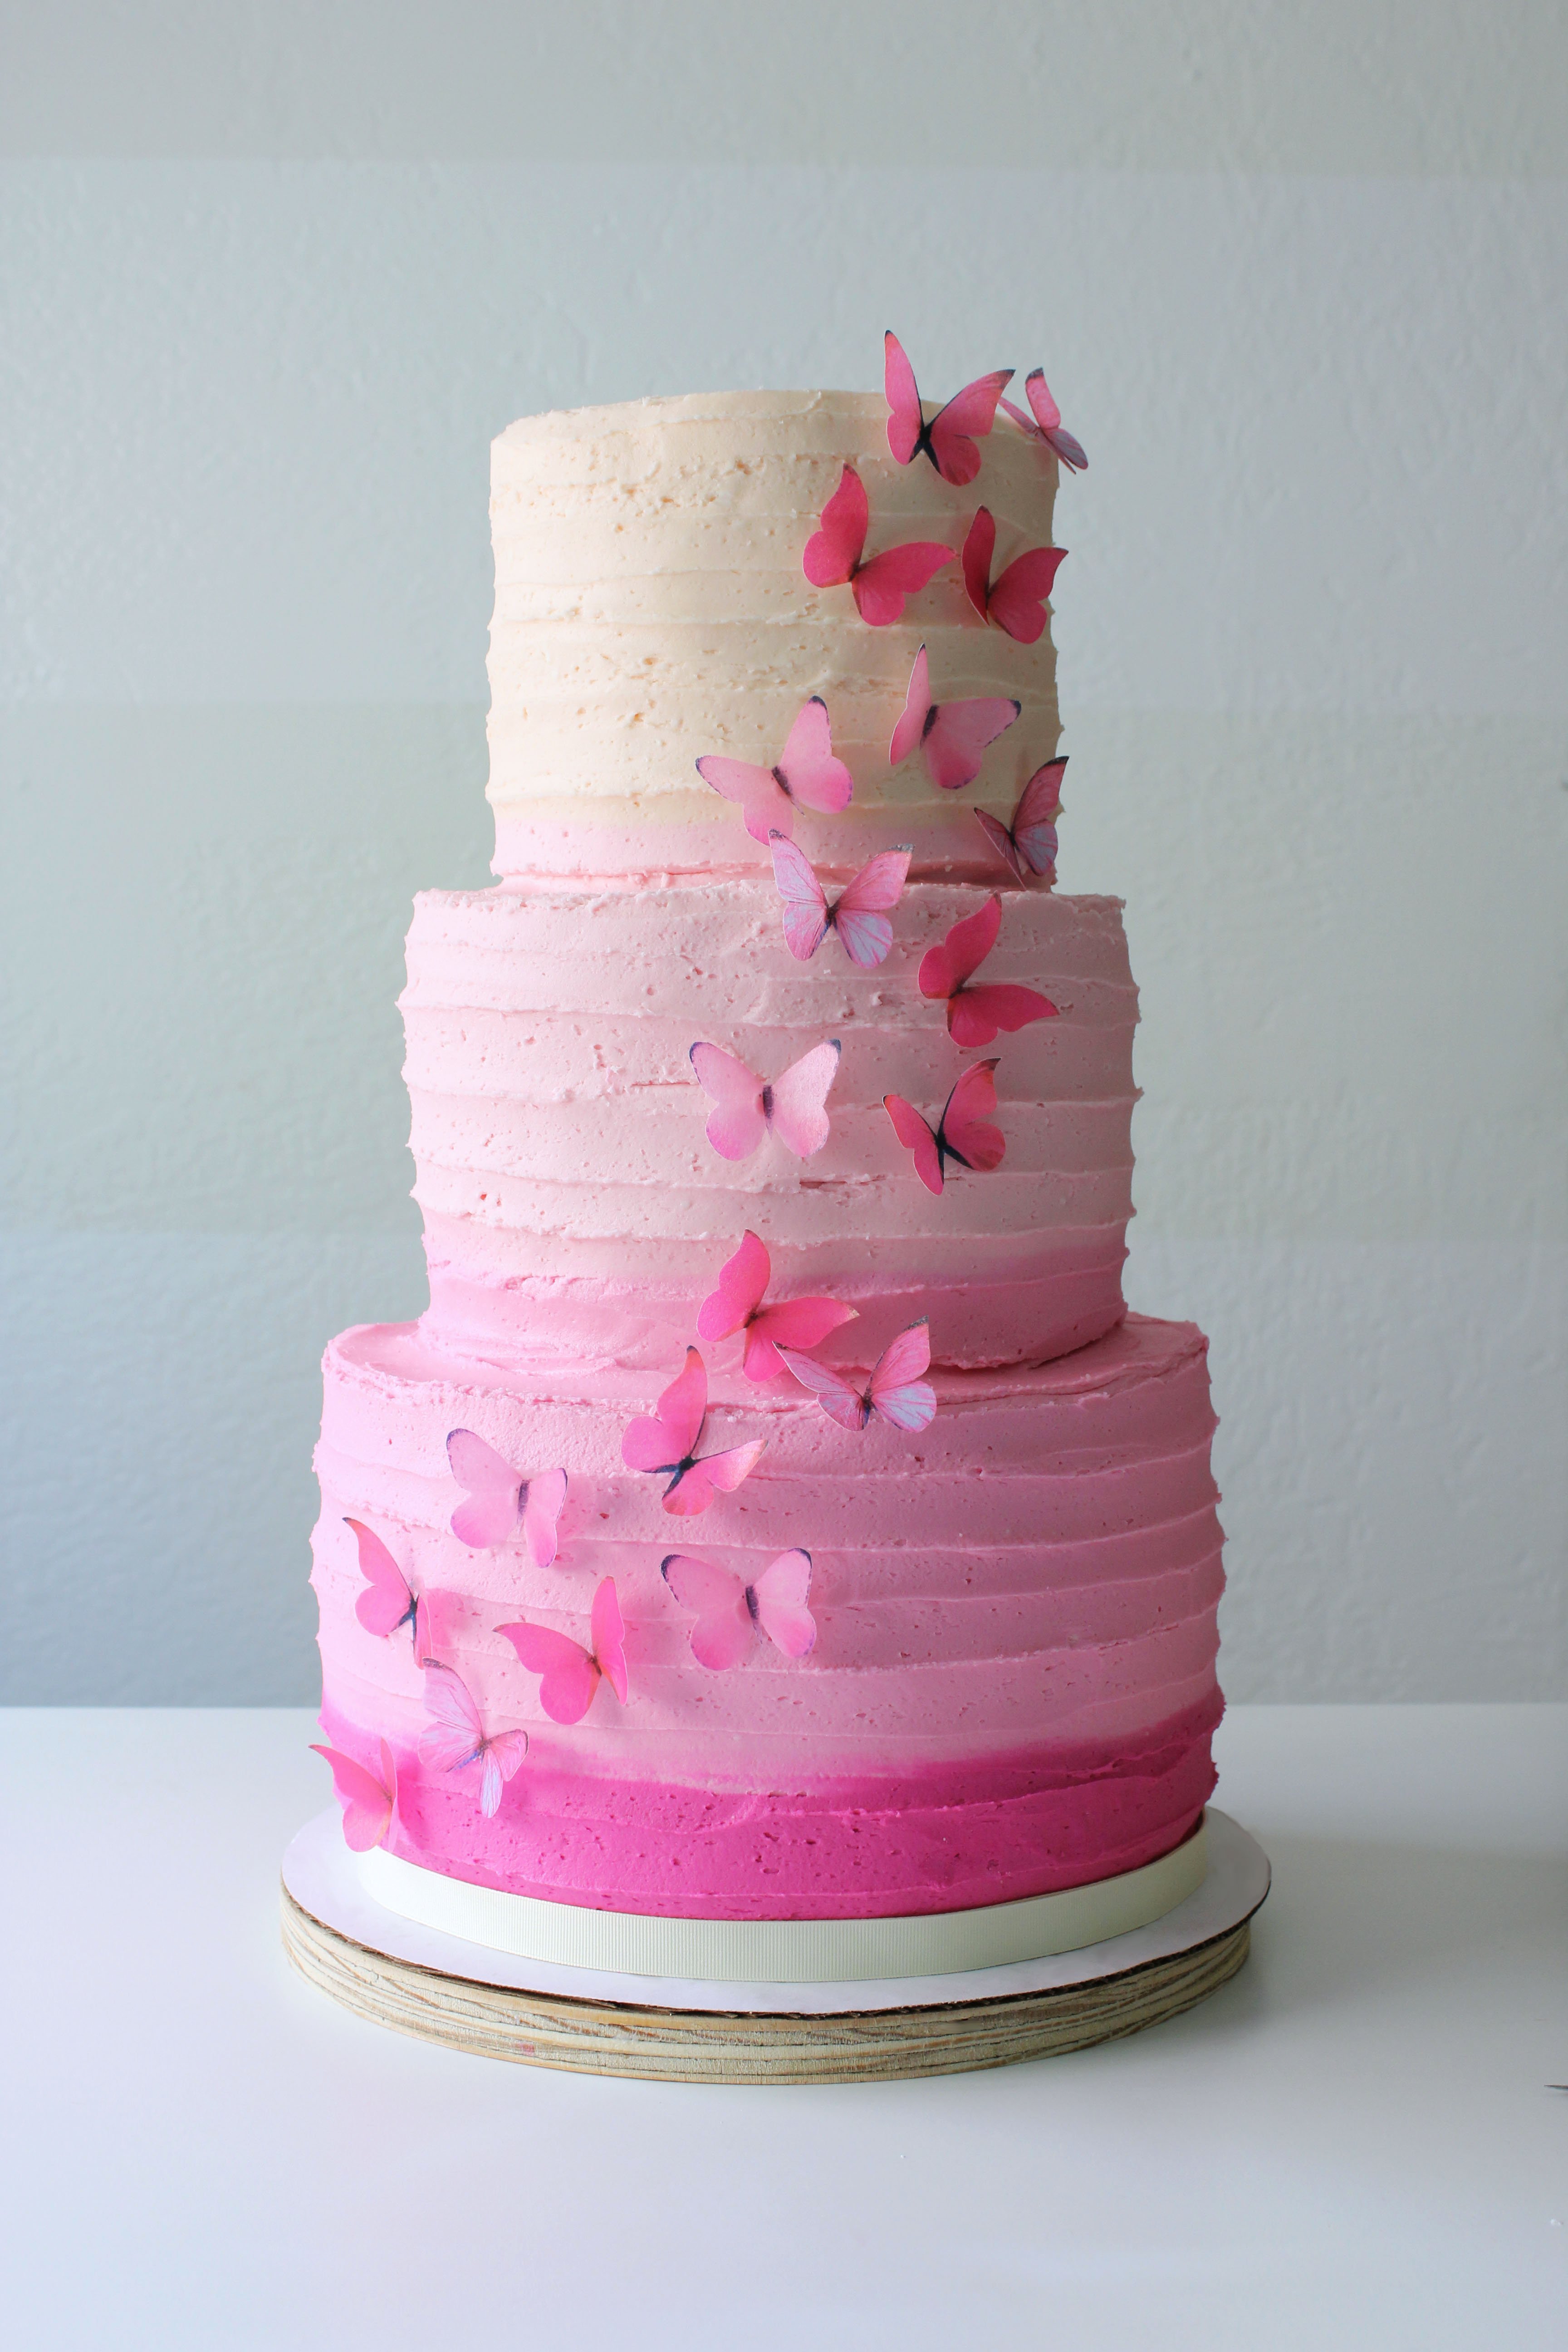 Сделать розовый торт. Торт омбре. Розовый торт. Торт в розовых тонах. Торт омбре трехъярусный.